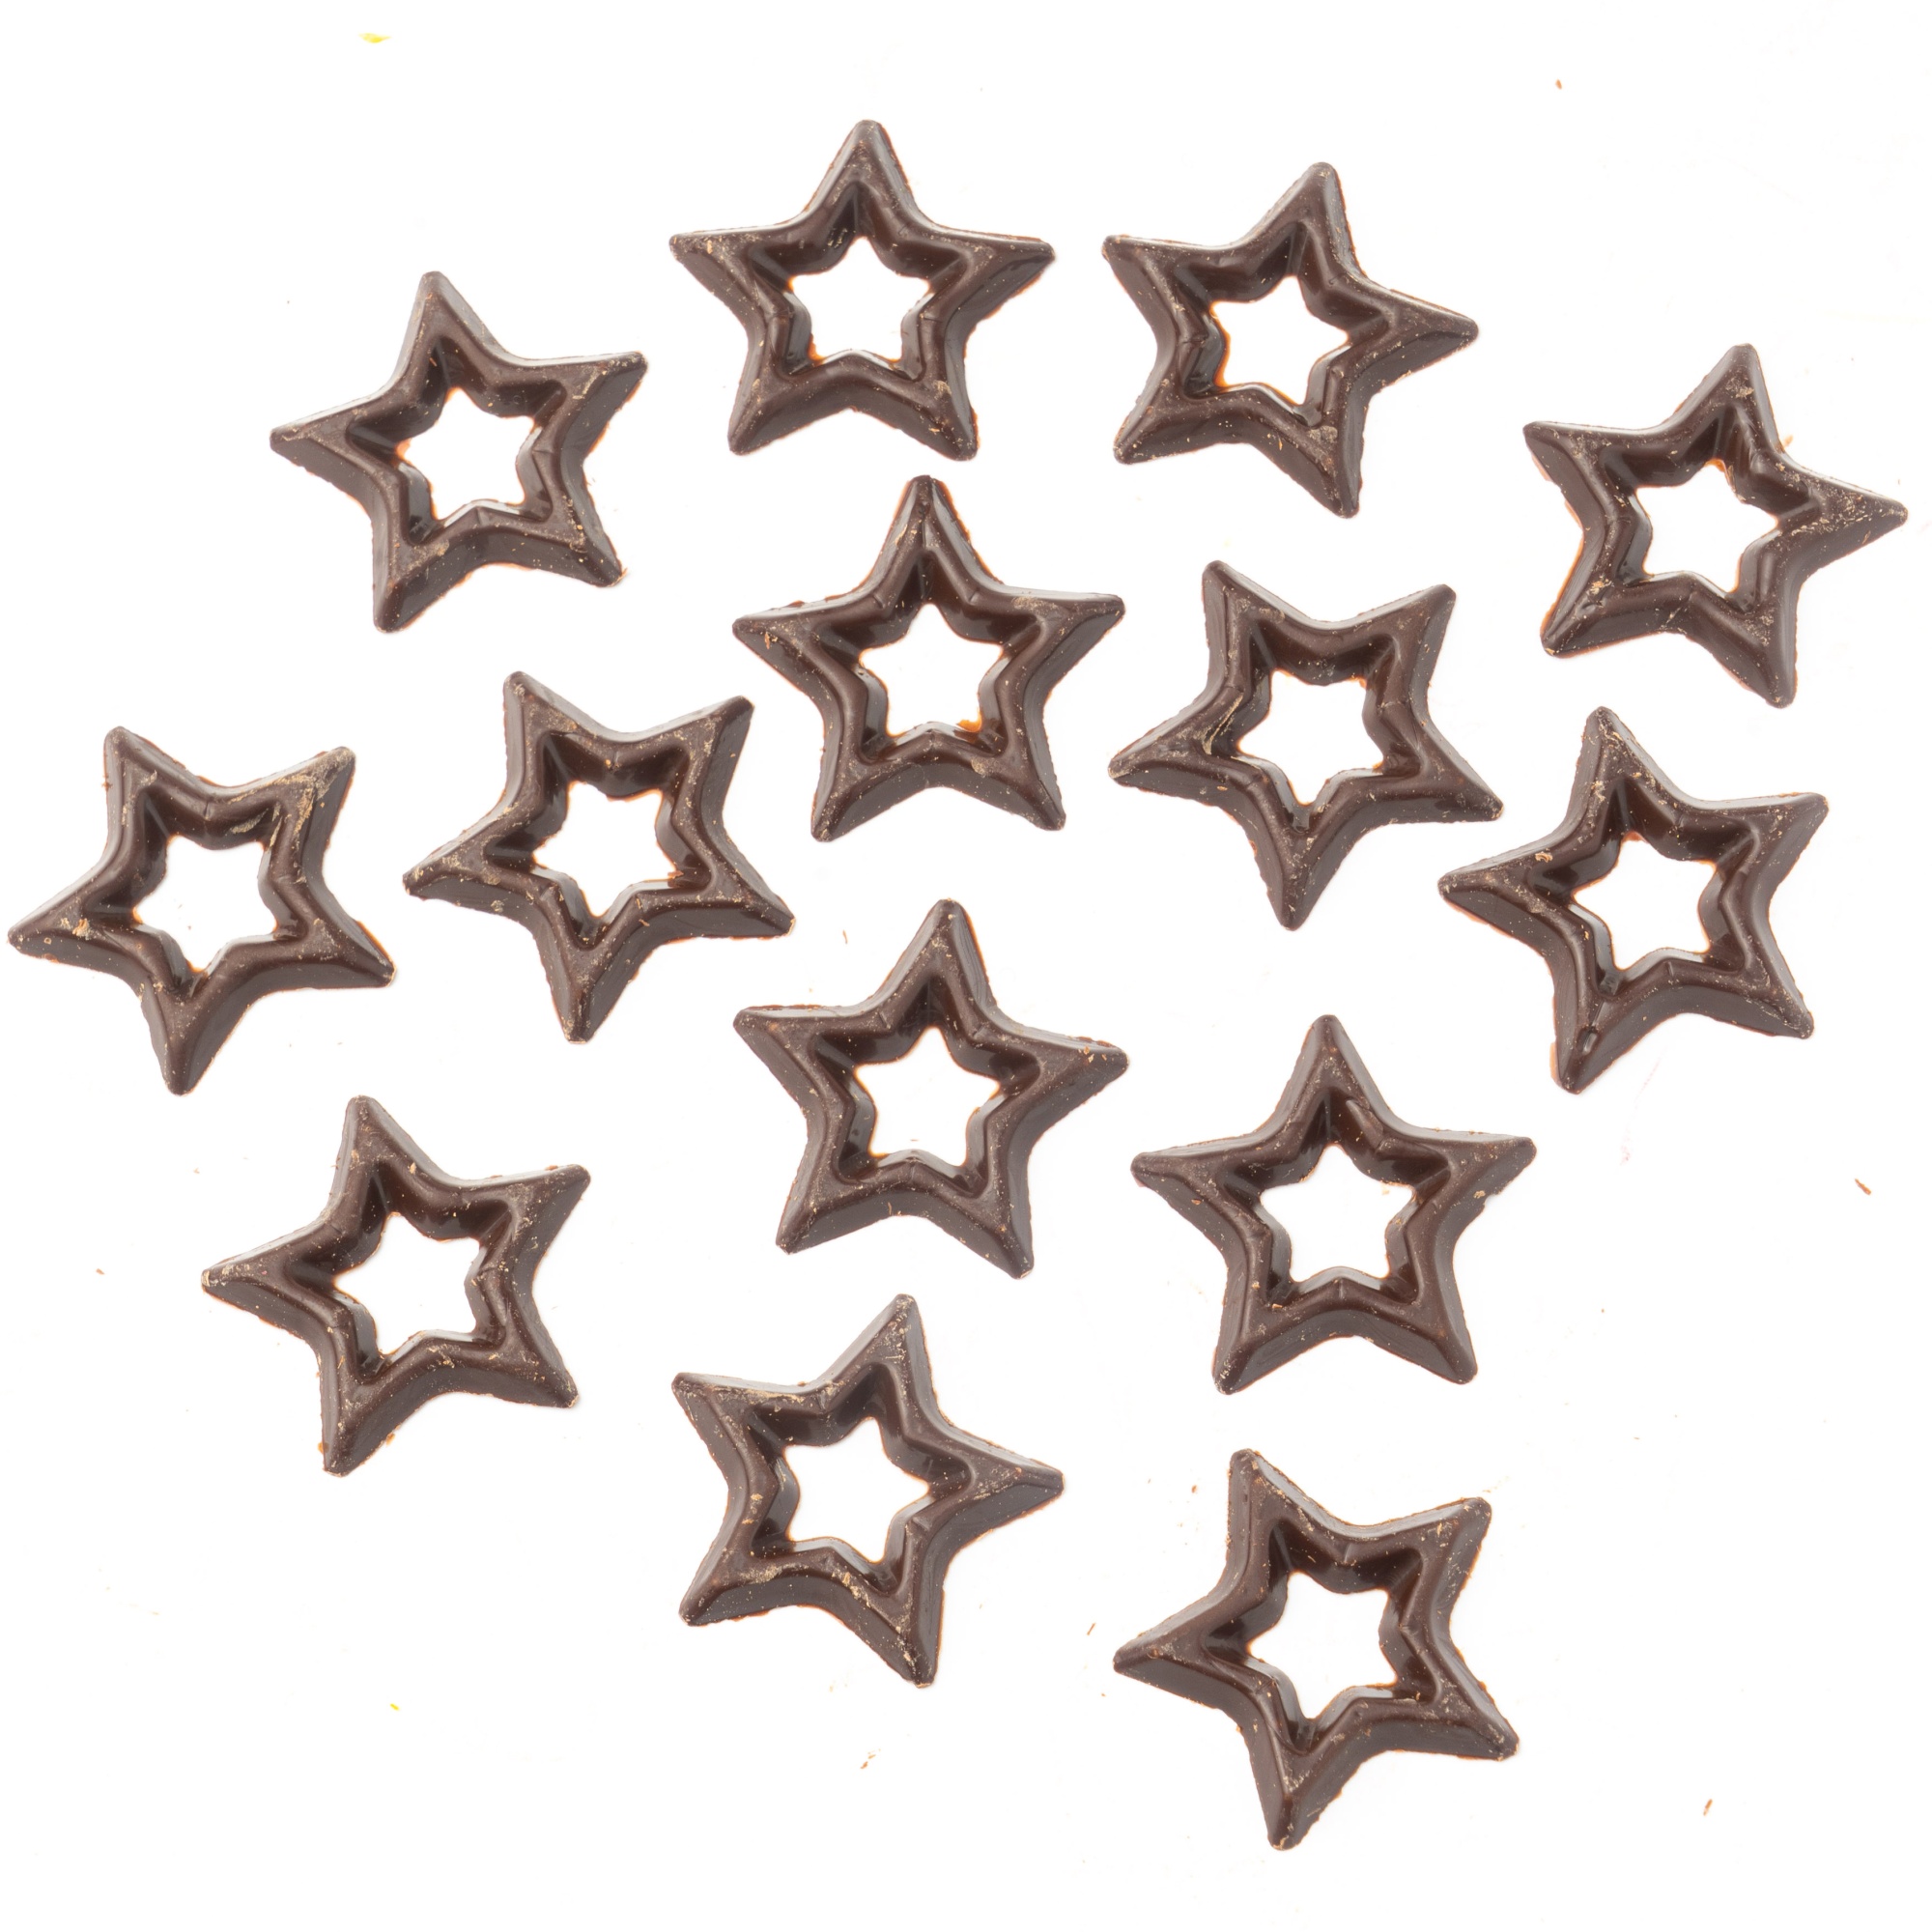 Шоколадка звезда. Шоколадная звезда. Шоколадная красная звезда. Украшение шоколад. "Звезда темная" (304 шт/уп) арт.d77134, Бельгия. Форма семиконечная звезда для шоколада.